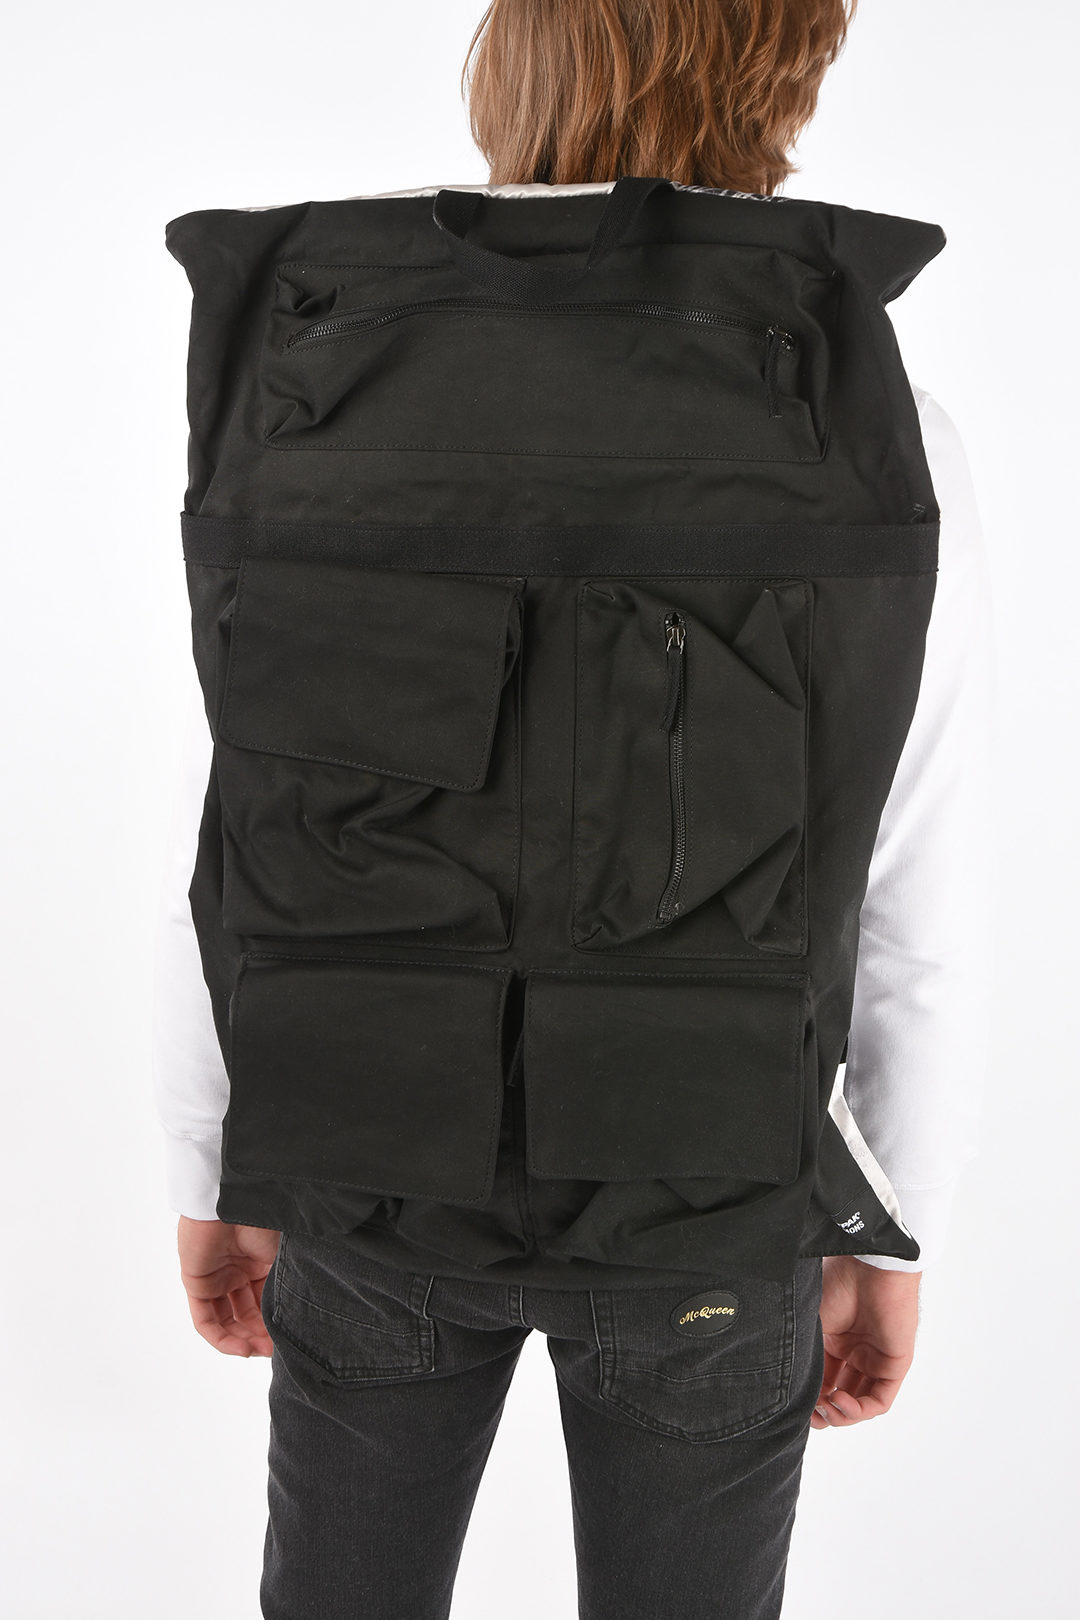 Eastpak X Raf Simons Poster Belt Bag in Black for Men